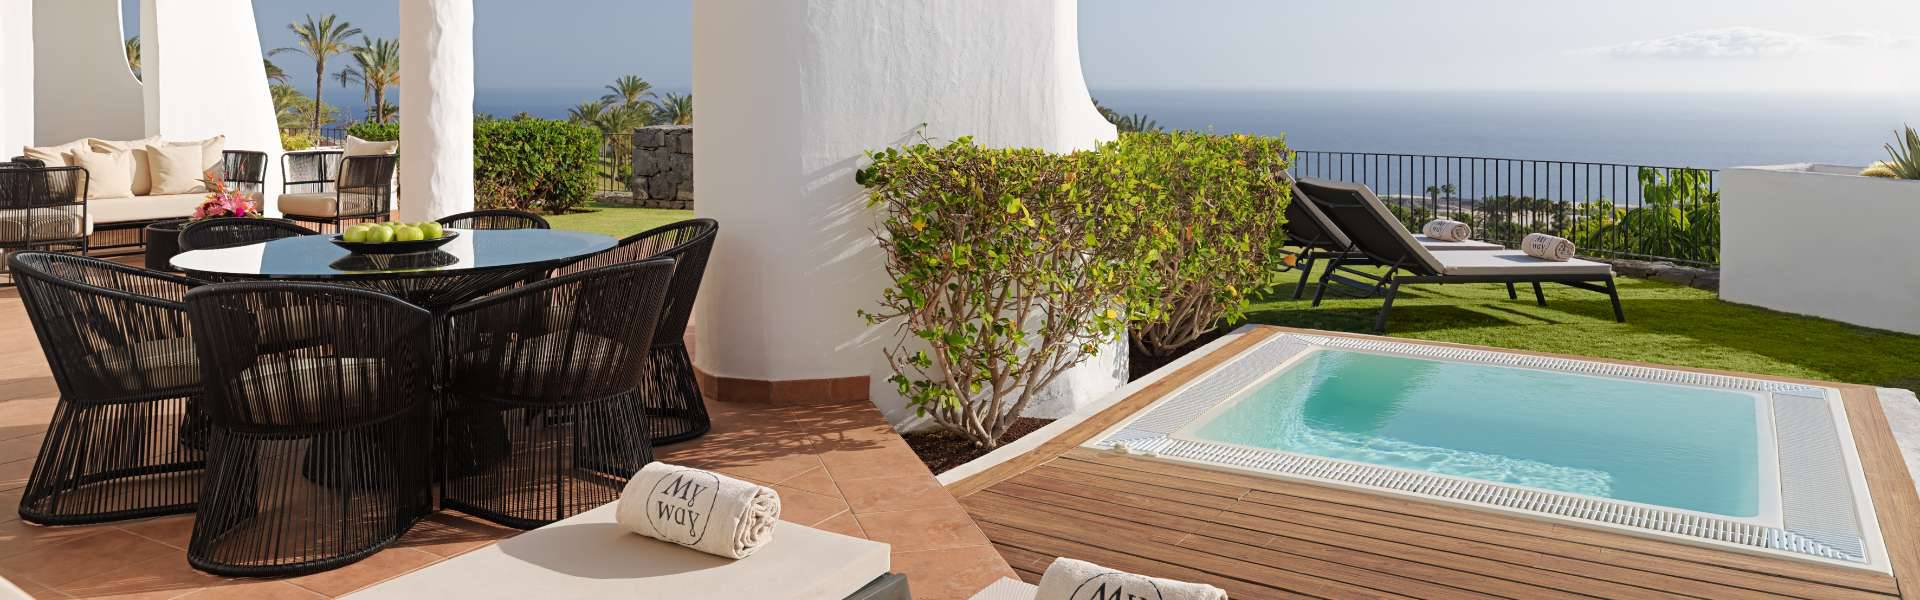  Hotel Las Terrazas de Abama Suites Tenerife